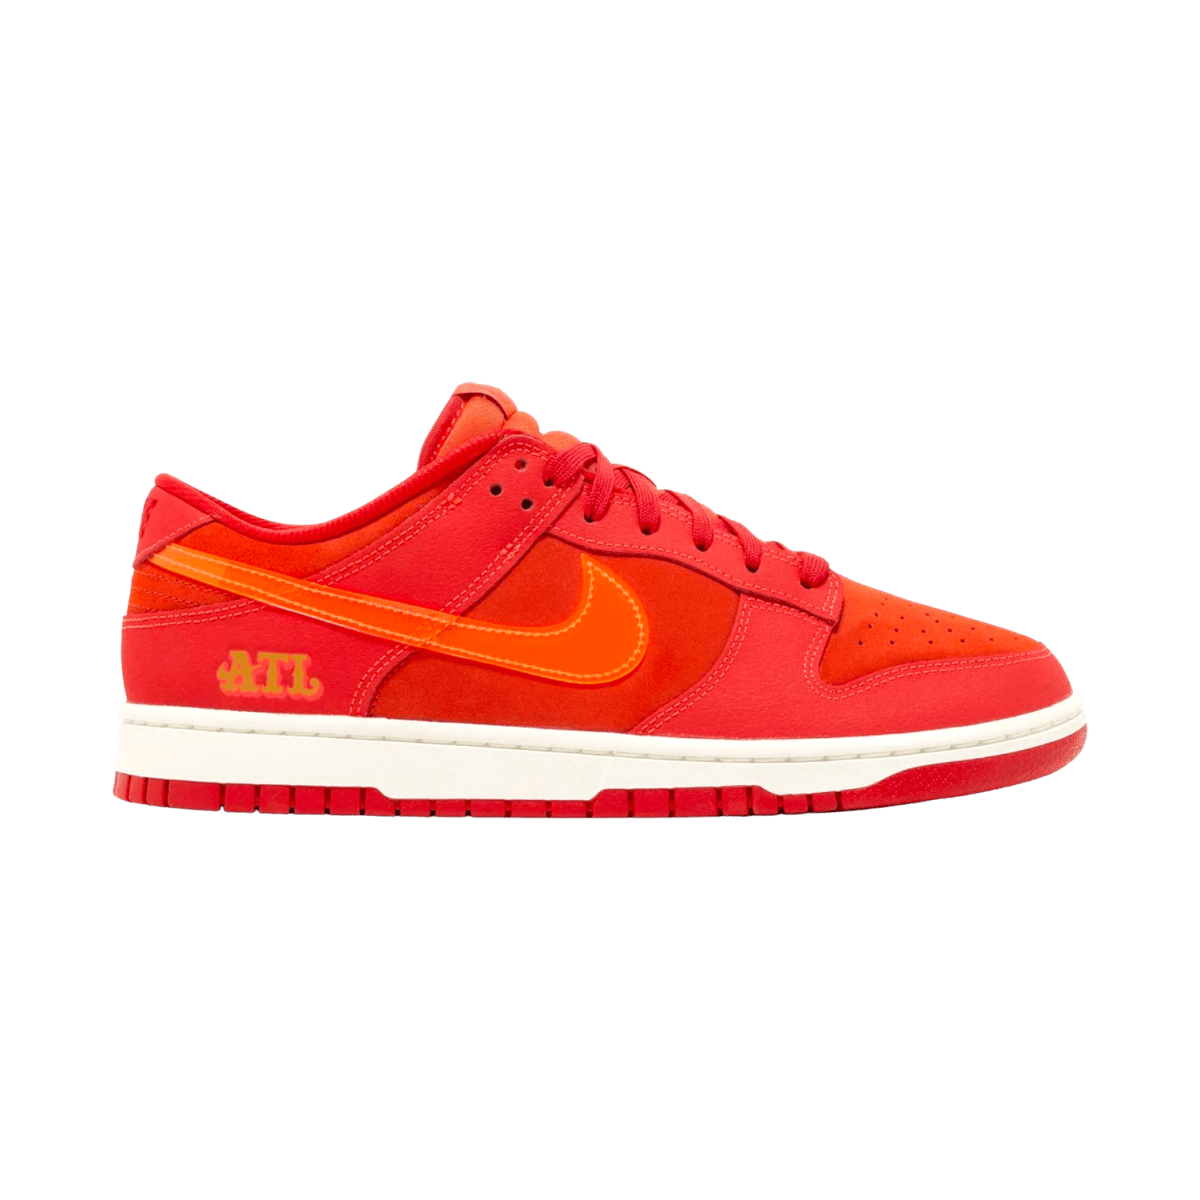 Dunk Low Atlanta Red - Low Sneaker - Jawns on Fire Sneakers & Streetwear